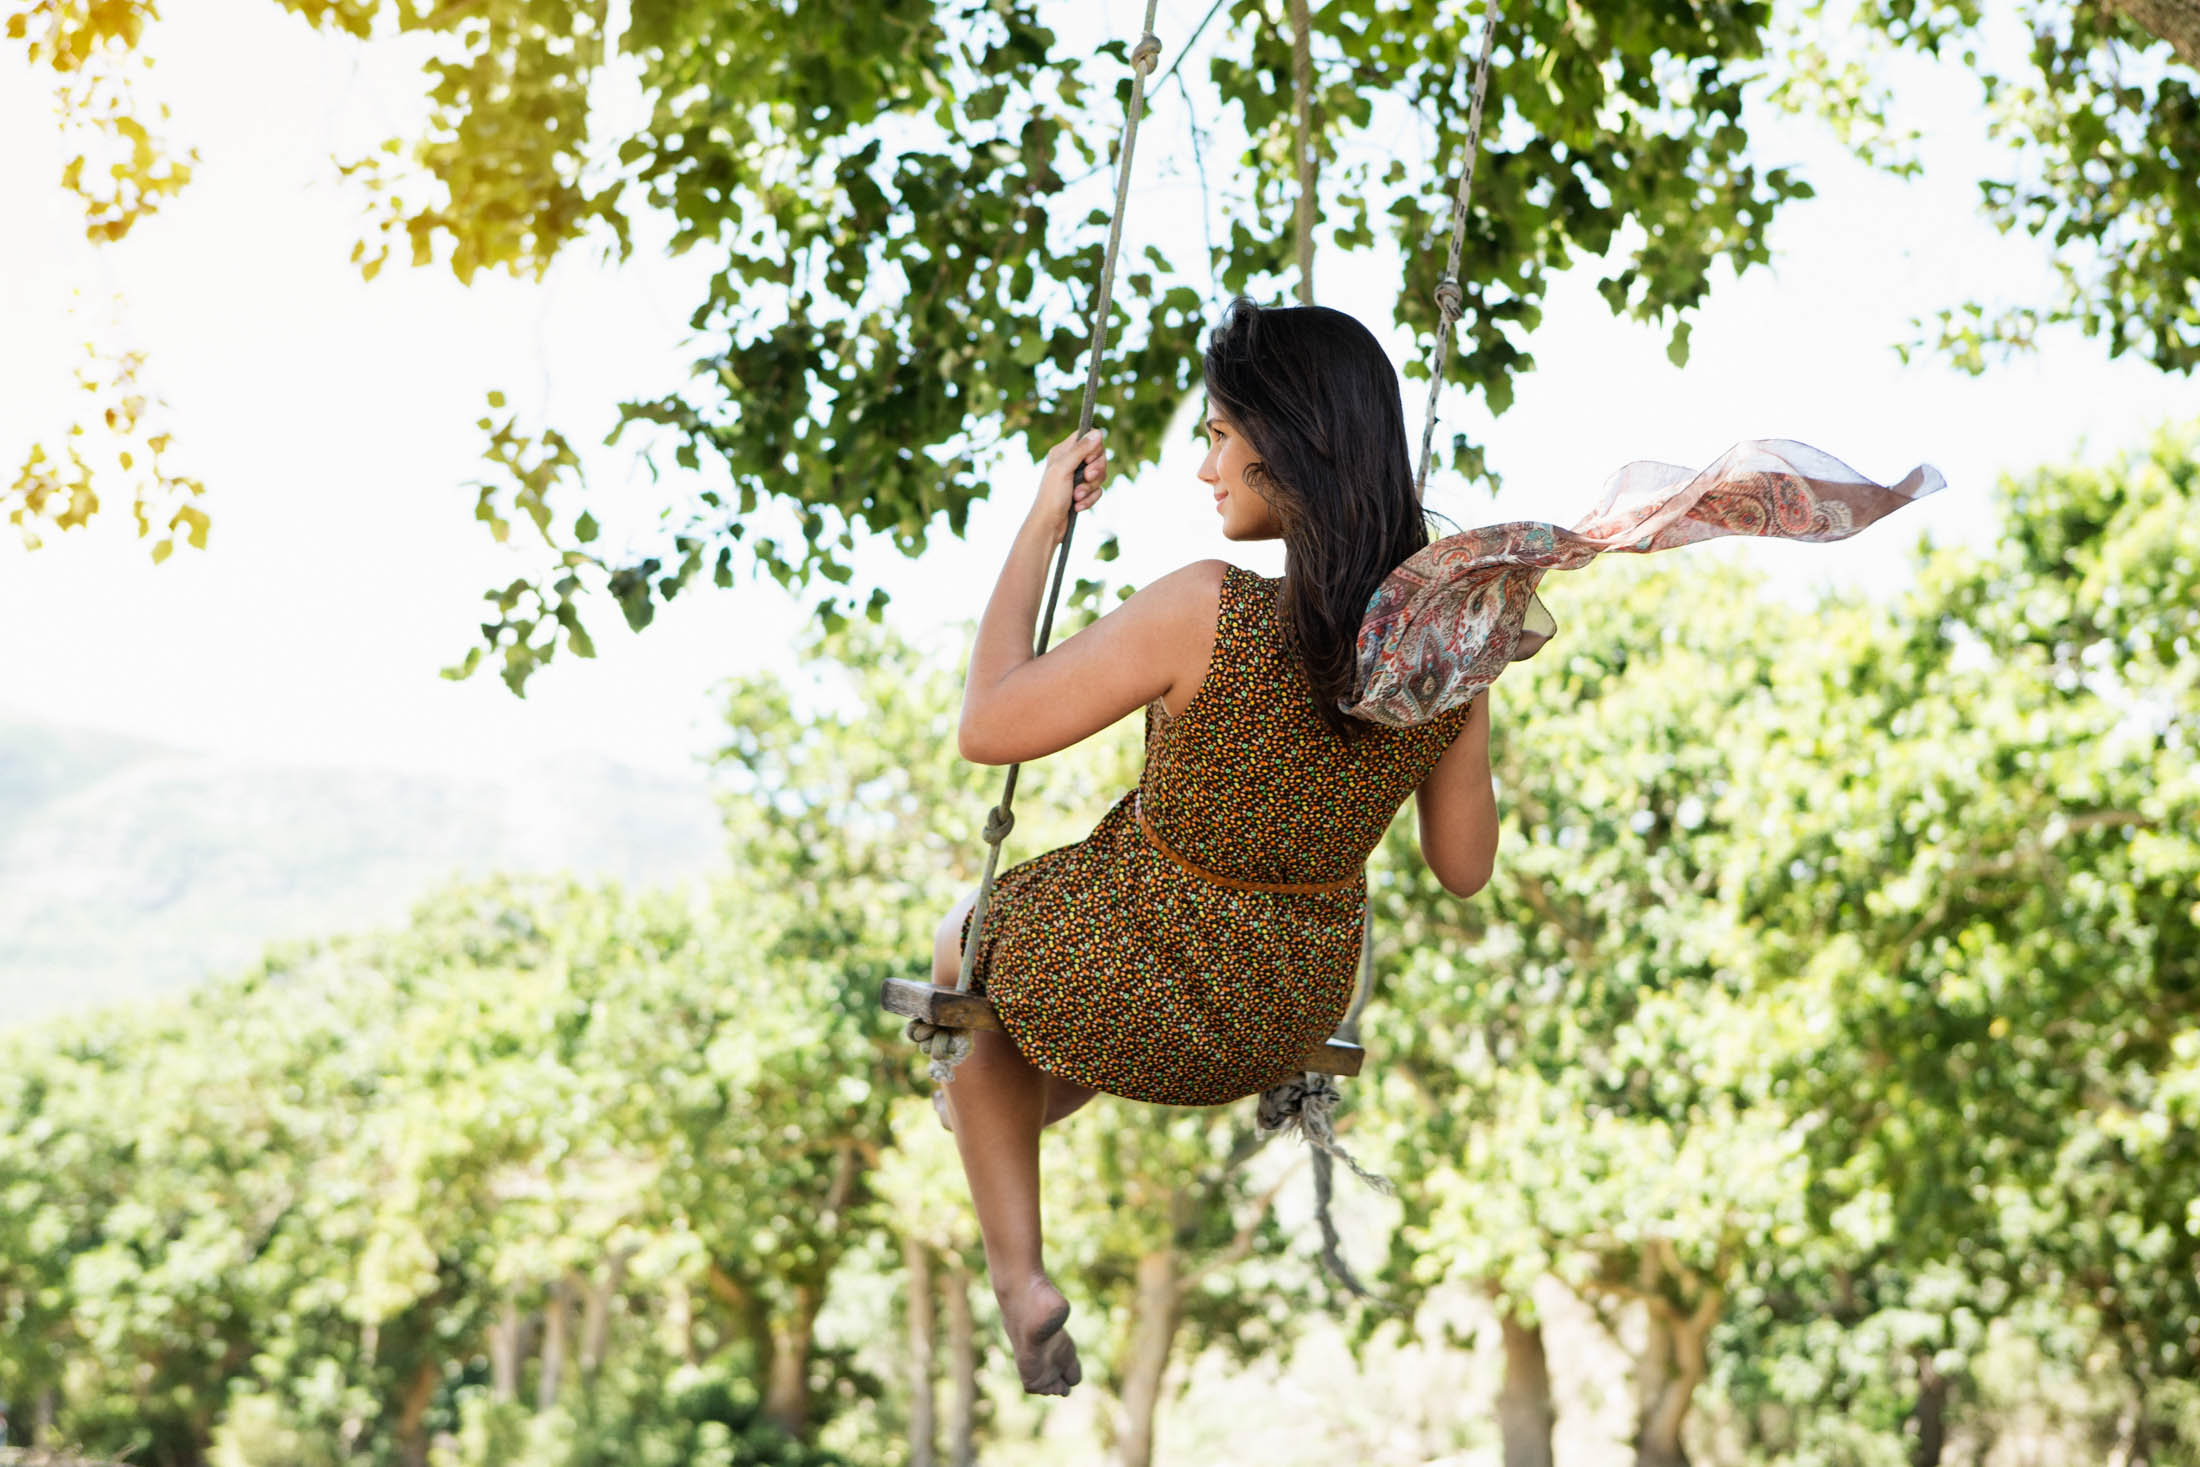 Eine Frau in einem gemusterten Kleid schaukelt auf einer Seilschaukel unter belaubten Bäumen, mit dem Rücken zur Kamera, während ihr Haar weht und die malerische Natur im Hintergrund zu sehen ist. © Fotografie Tomas Rodriguez